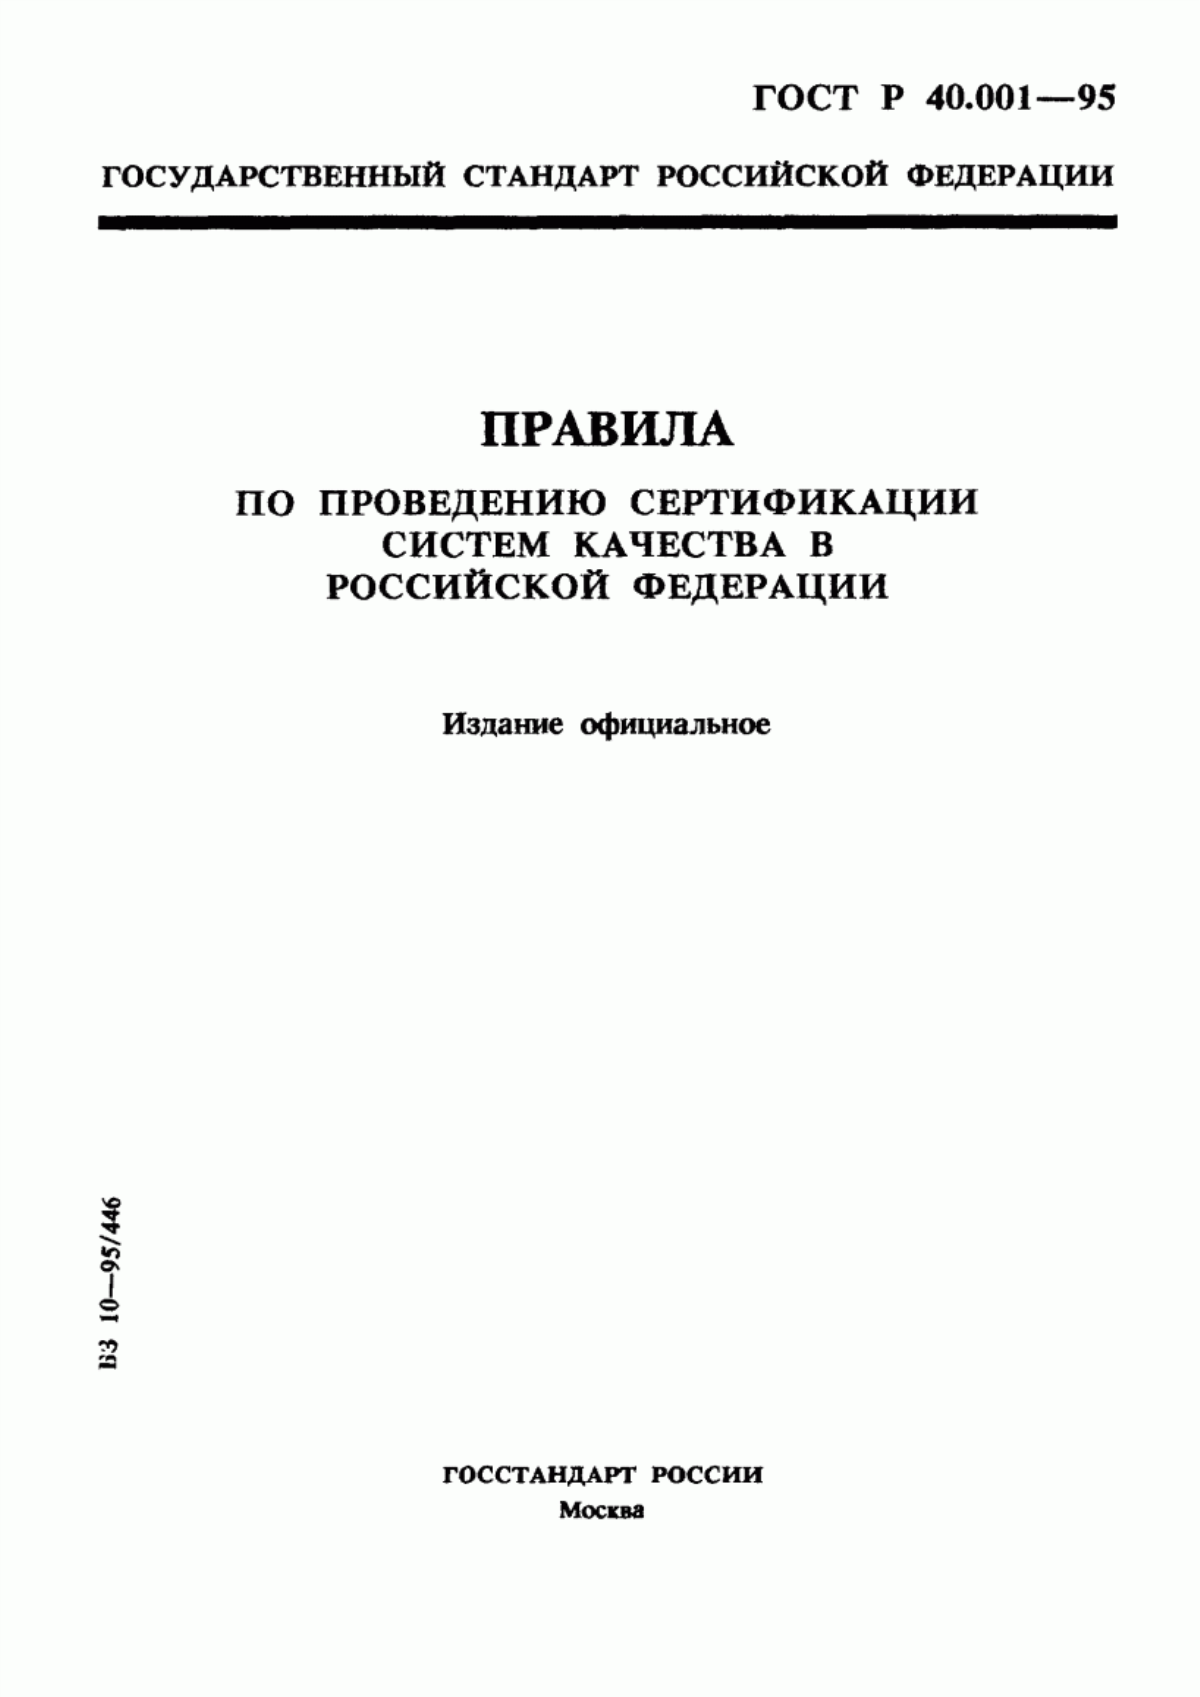 ГОСТ Р 40.001-95 Правила по проведению сертификации систем качества в Российской Федерации